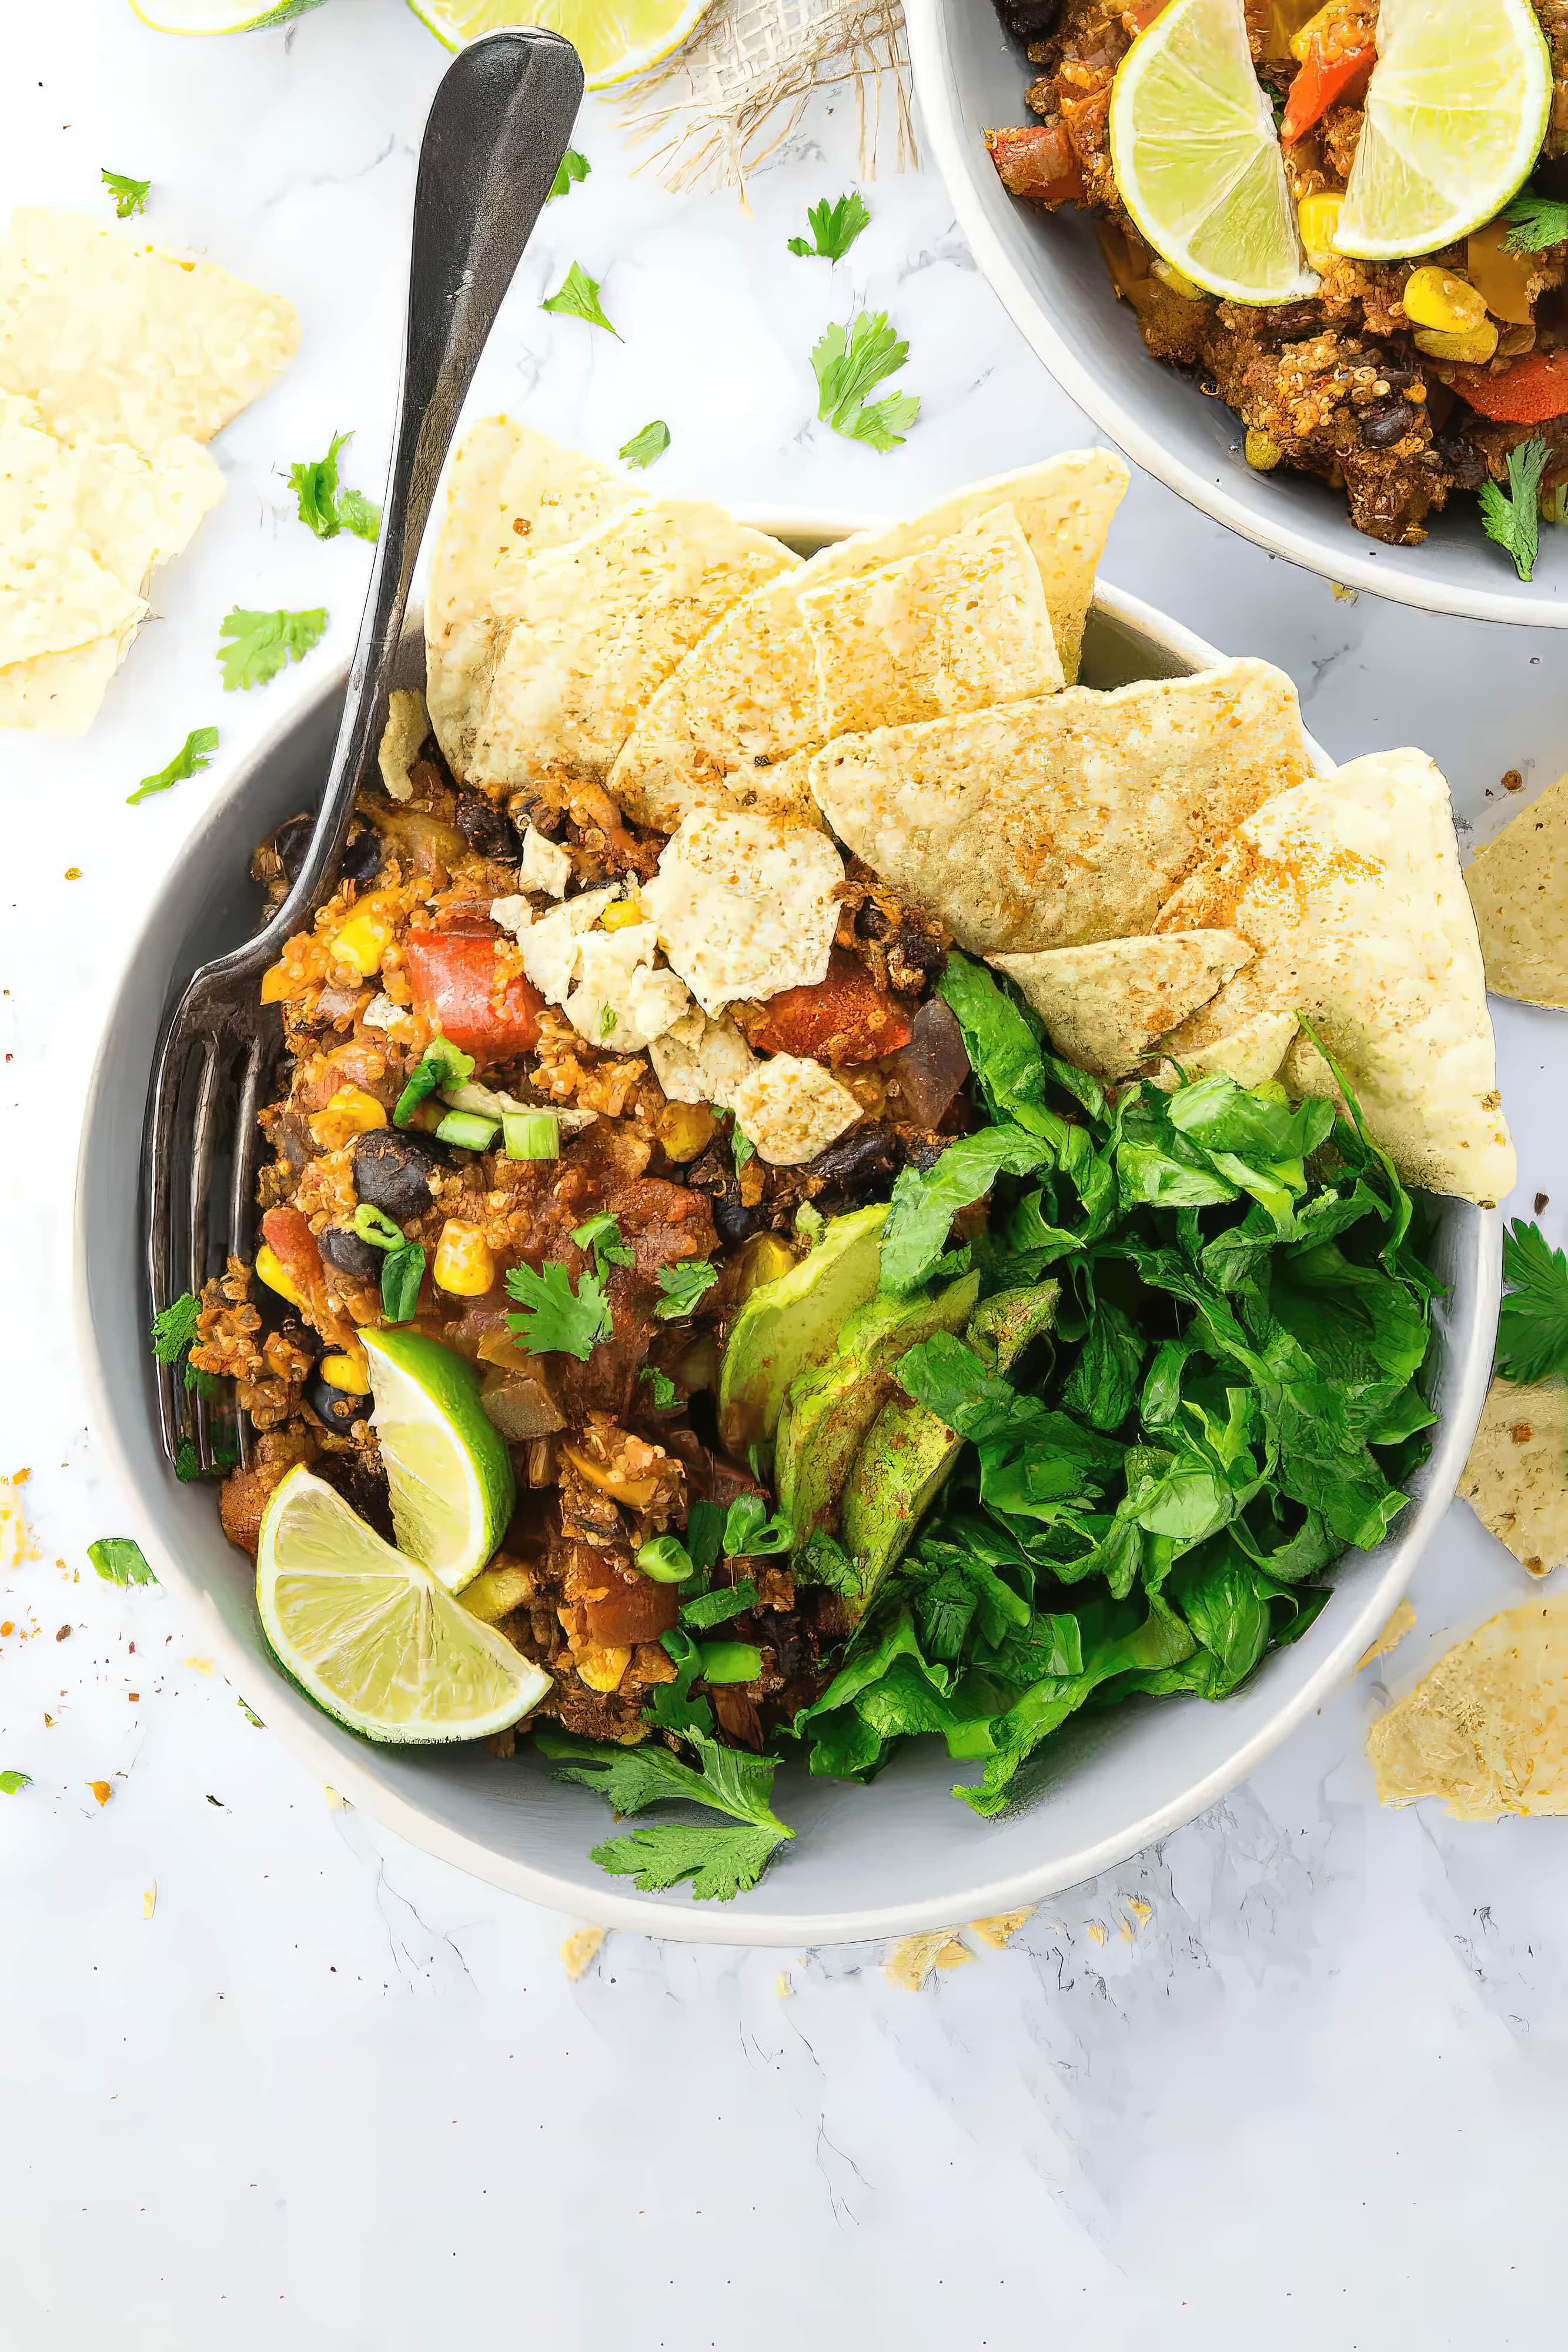 Image of vegan burrito bowl with quinoa